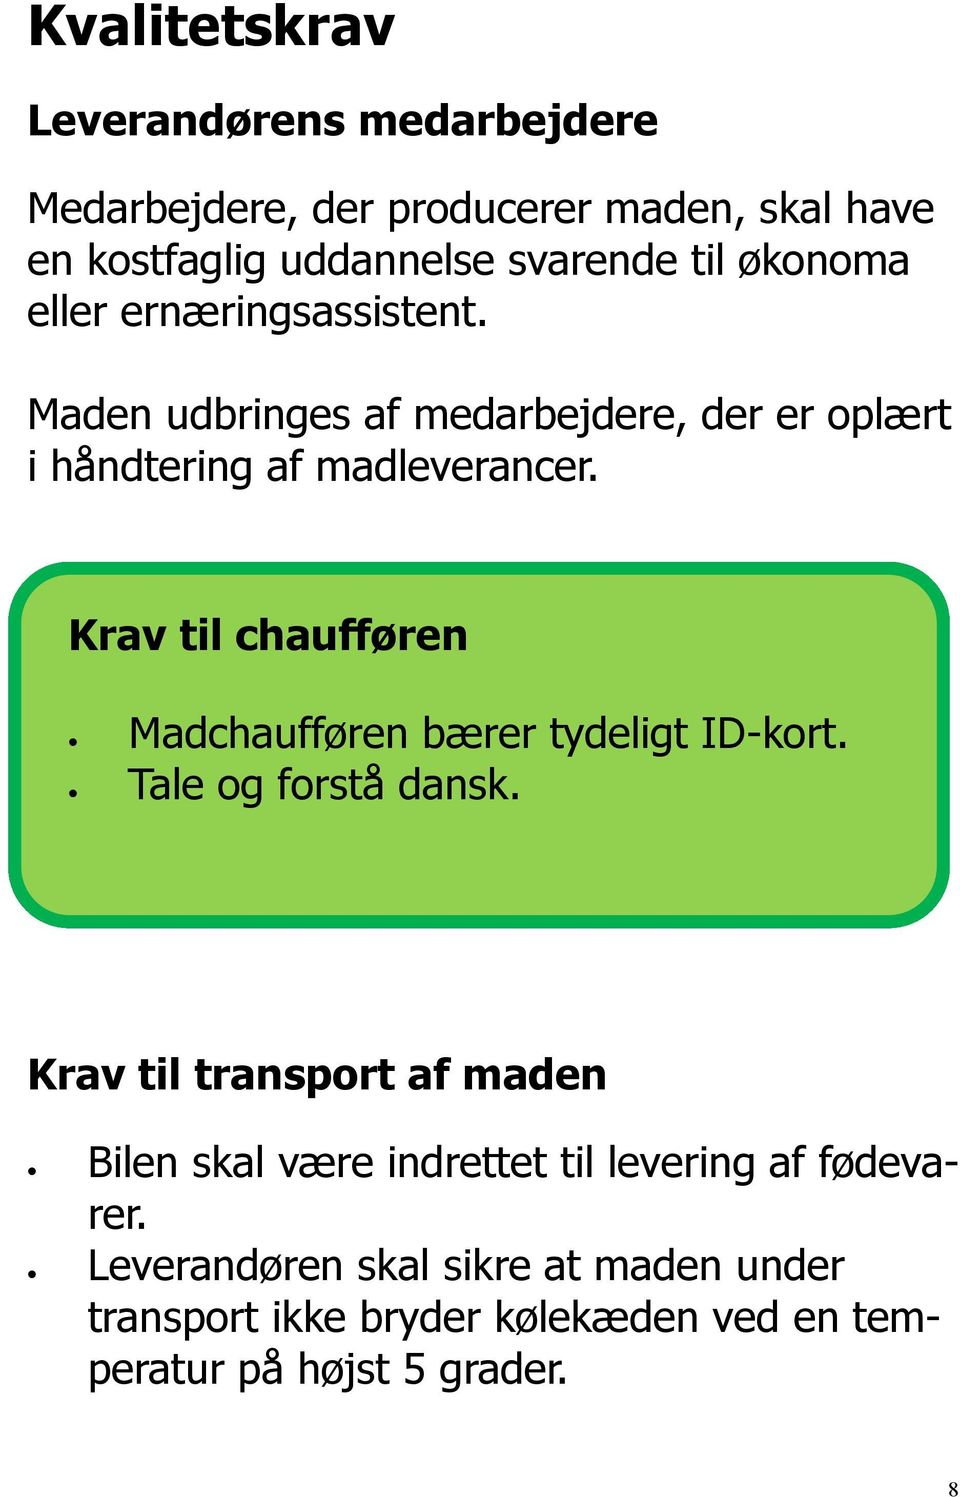 Krav til chaufføren Madchaufføren bærer tydeligt ID-kort. Tale og forstå dansk.